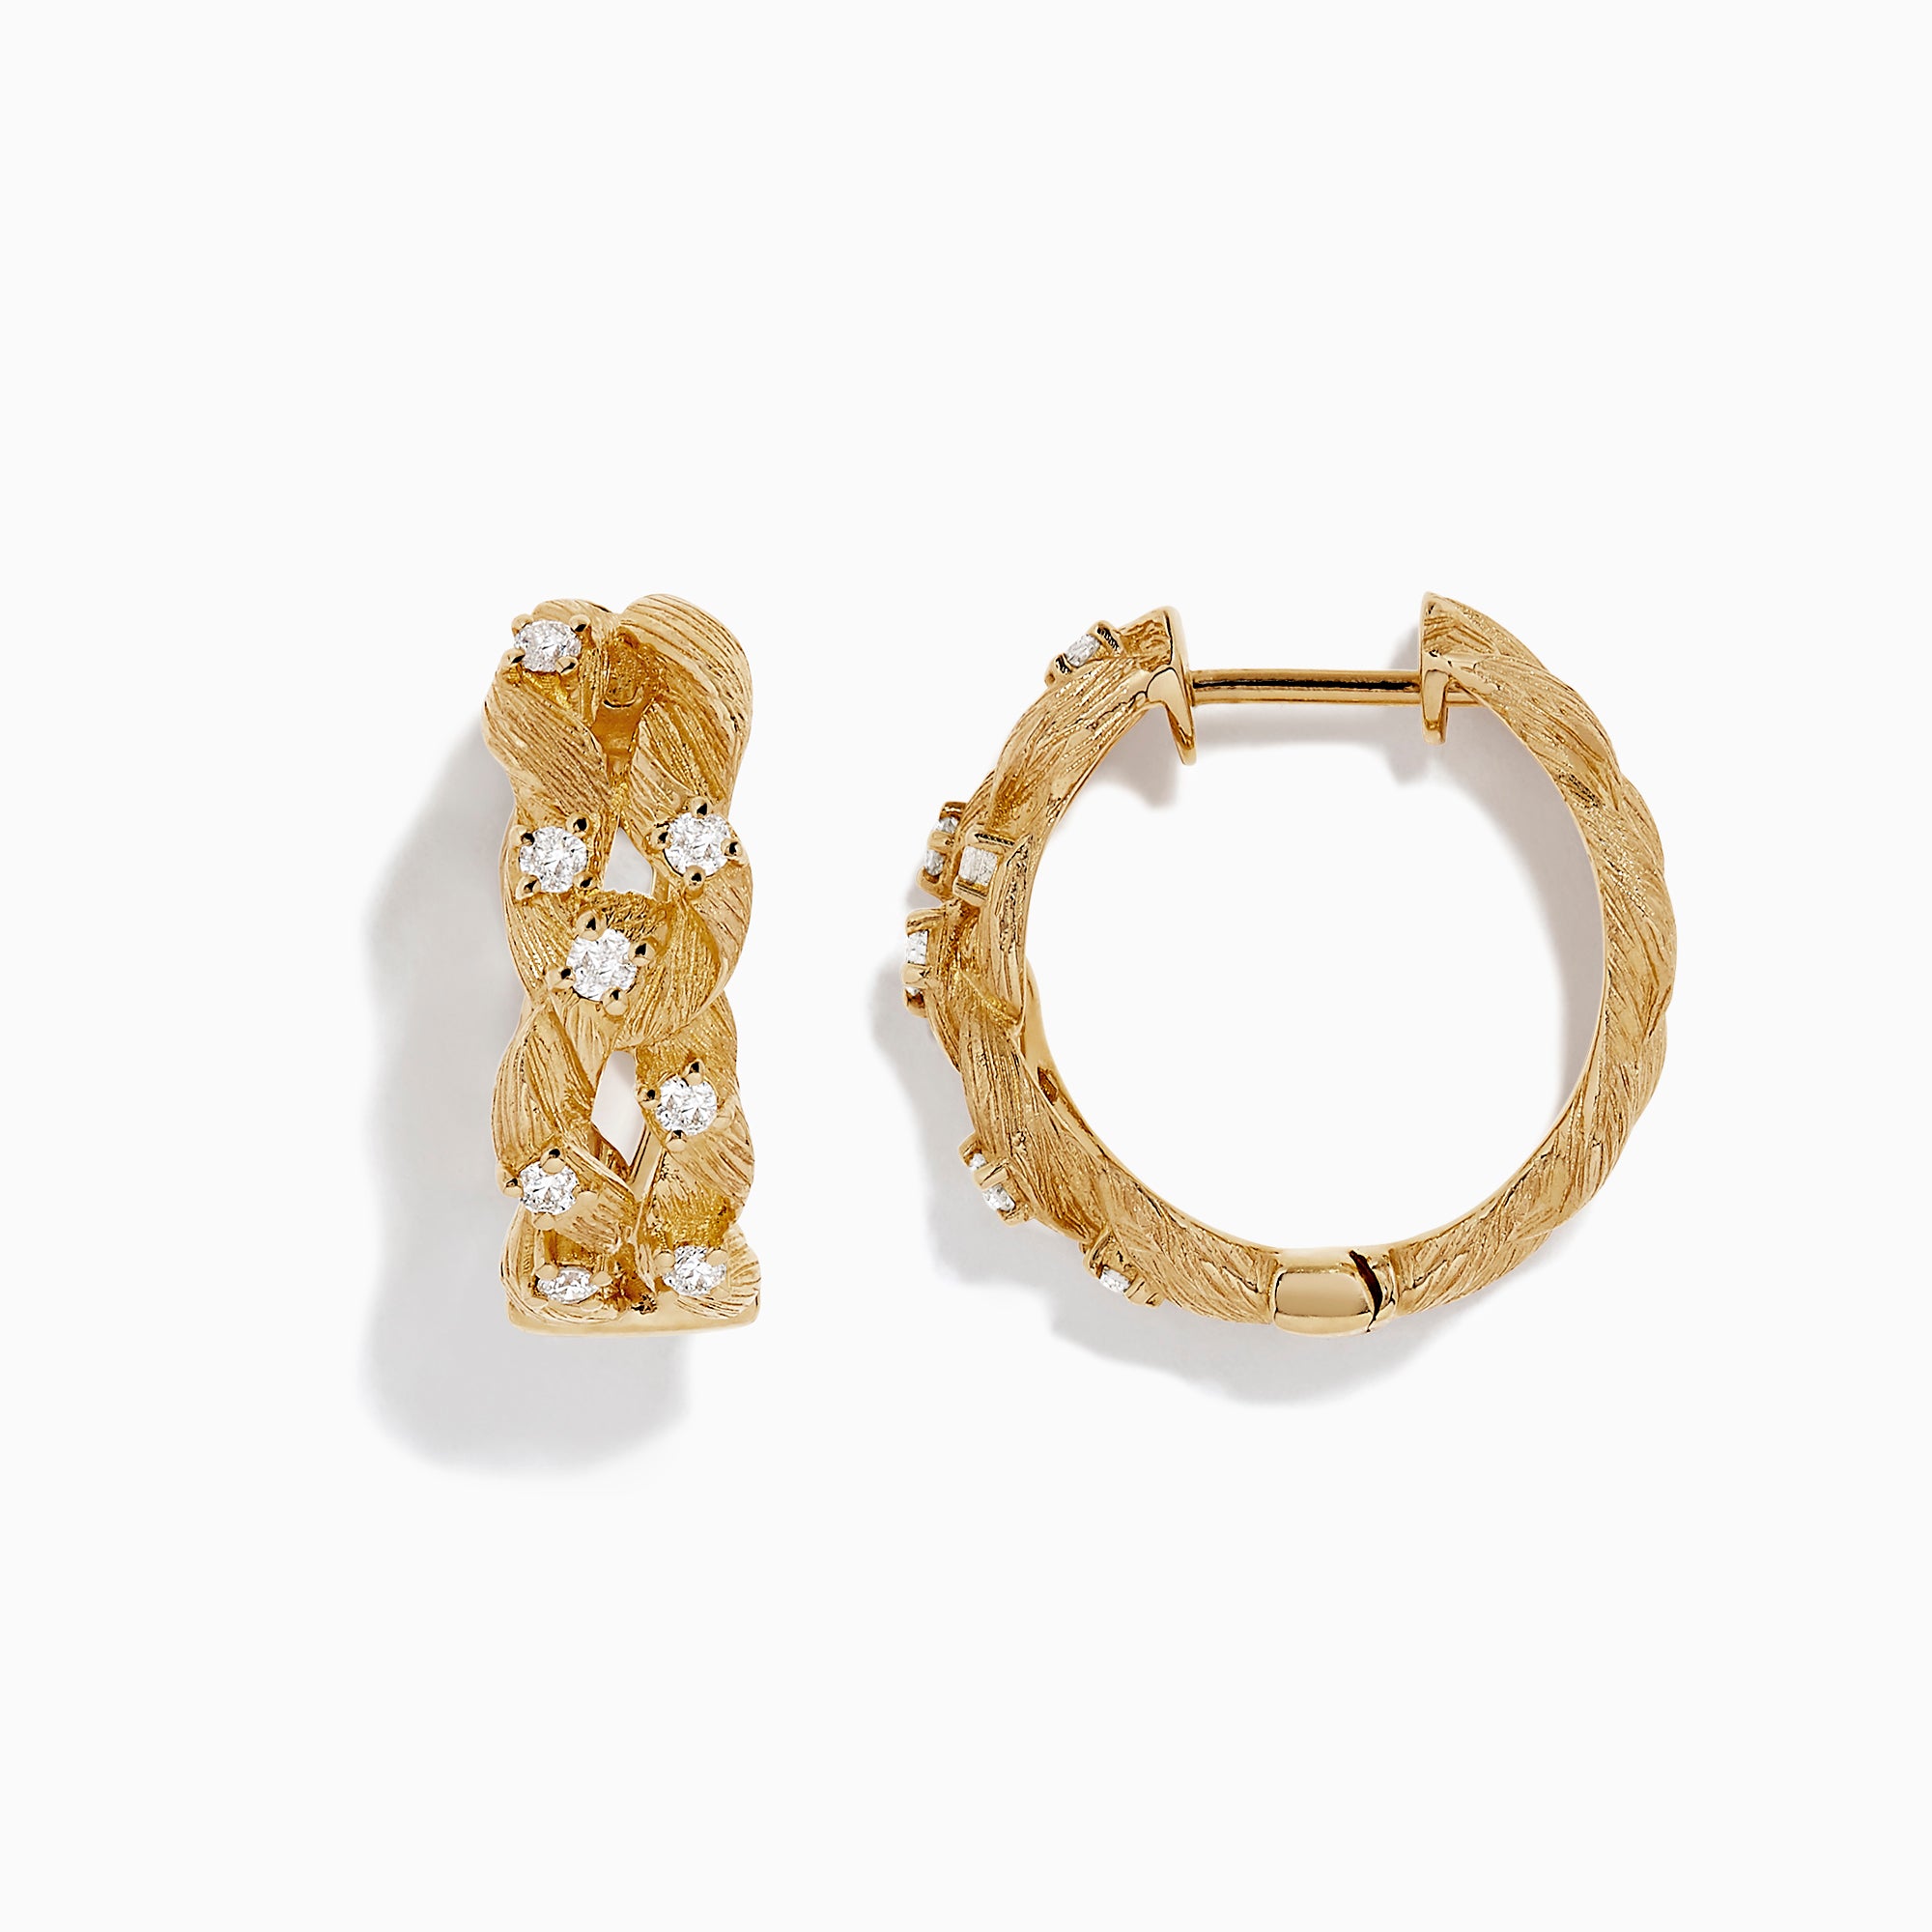 LUCKMORA White Gold Earring Backs 14K Solid Gold 0.15 Grams AU585